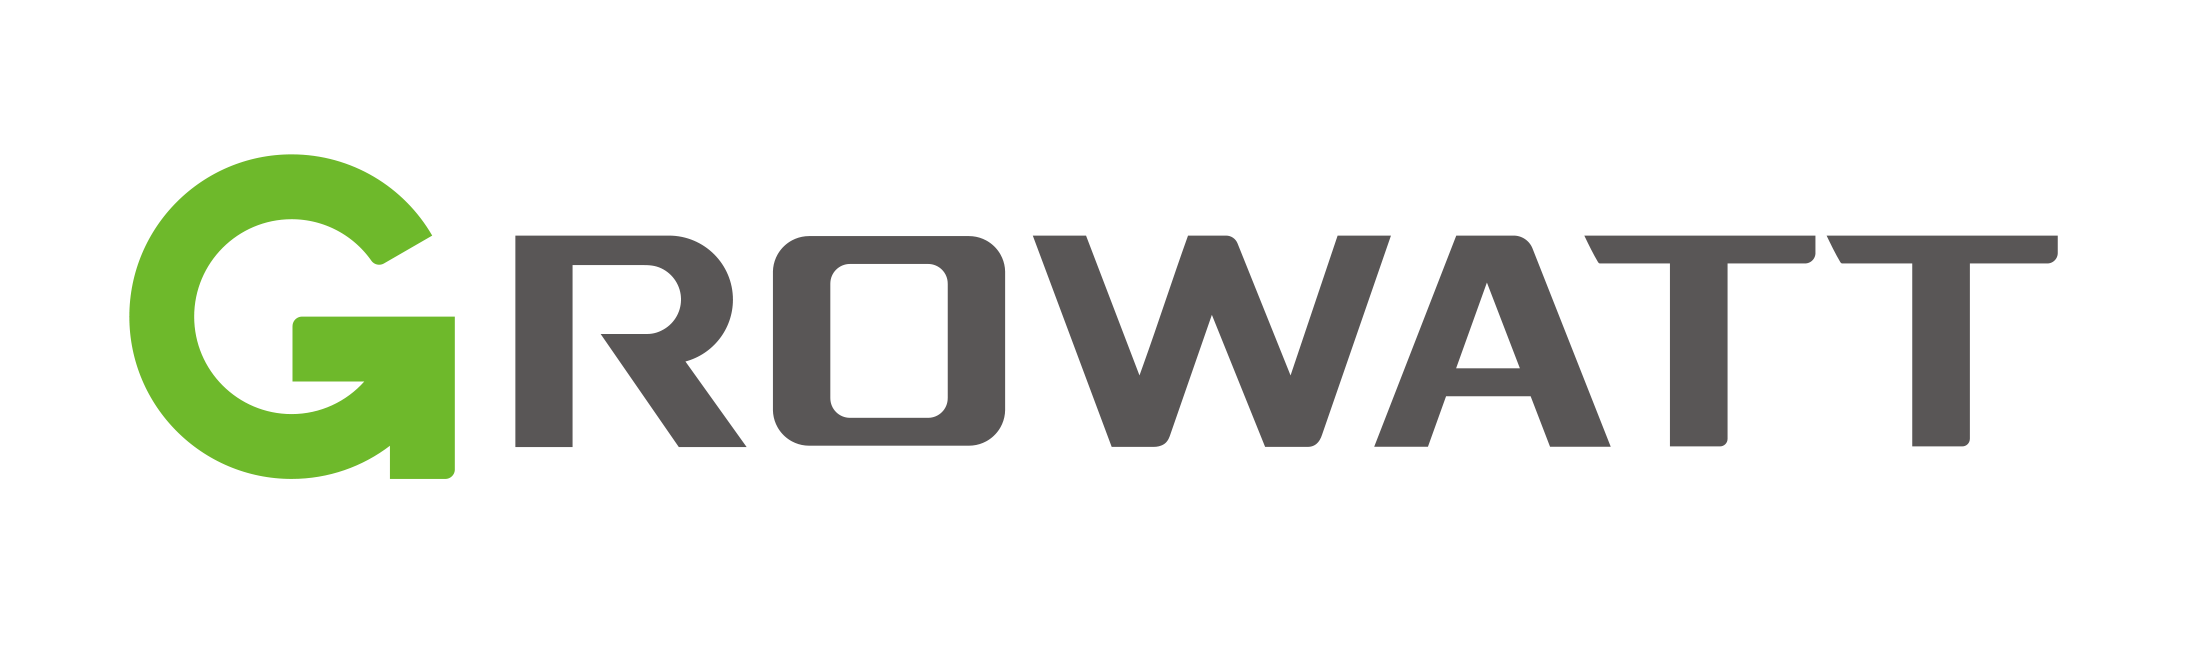 Growatt-logo-new-GB.png